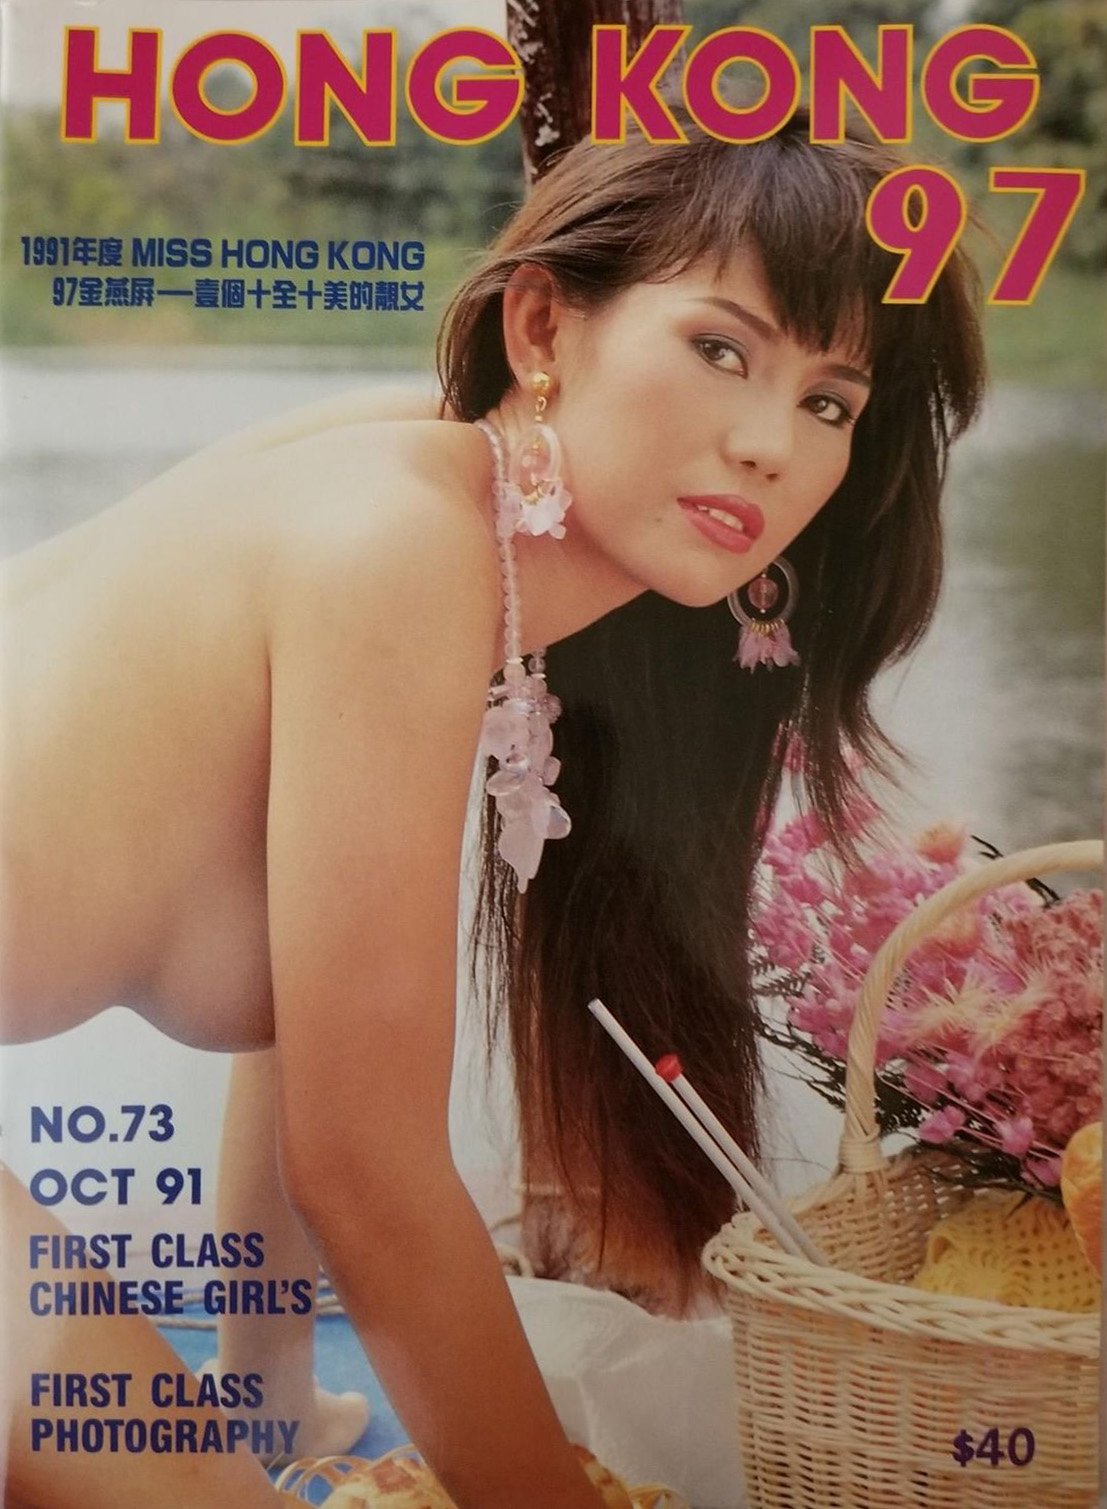 Hong Kong 97 # 73, October 1991 magazine back issue Hong Kong 97 magizine back copy 